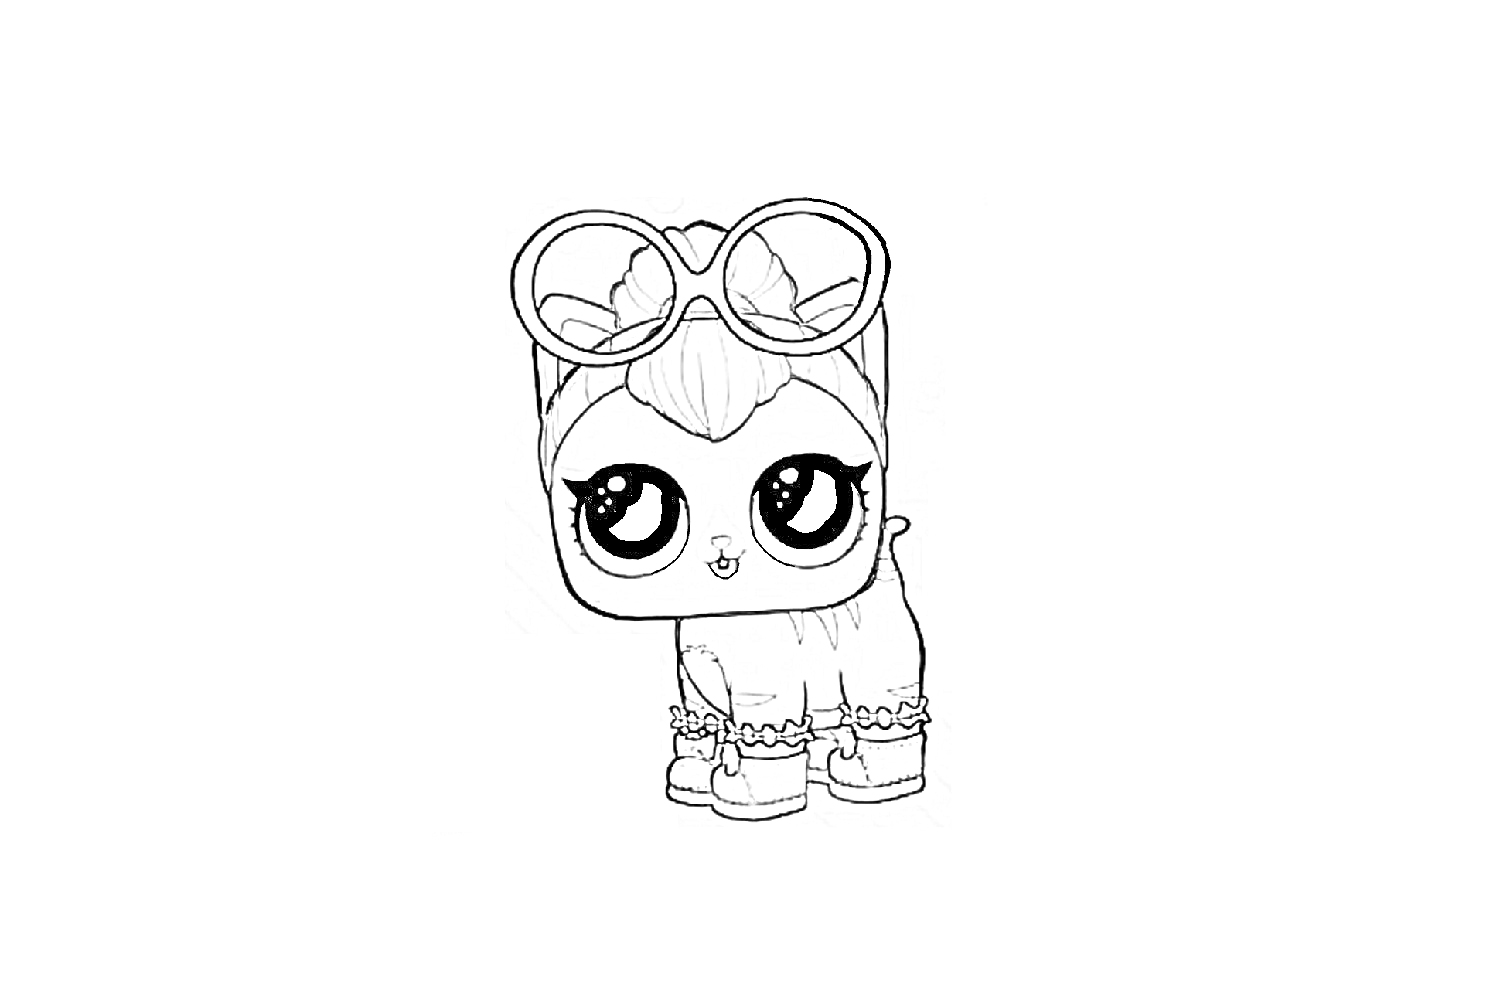 Раскраска Щенок с большими глазами, солнцезащитными очками на голове, бантом, головной повязкой, браслетами и ботинками